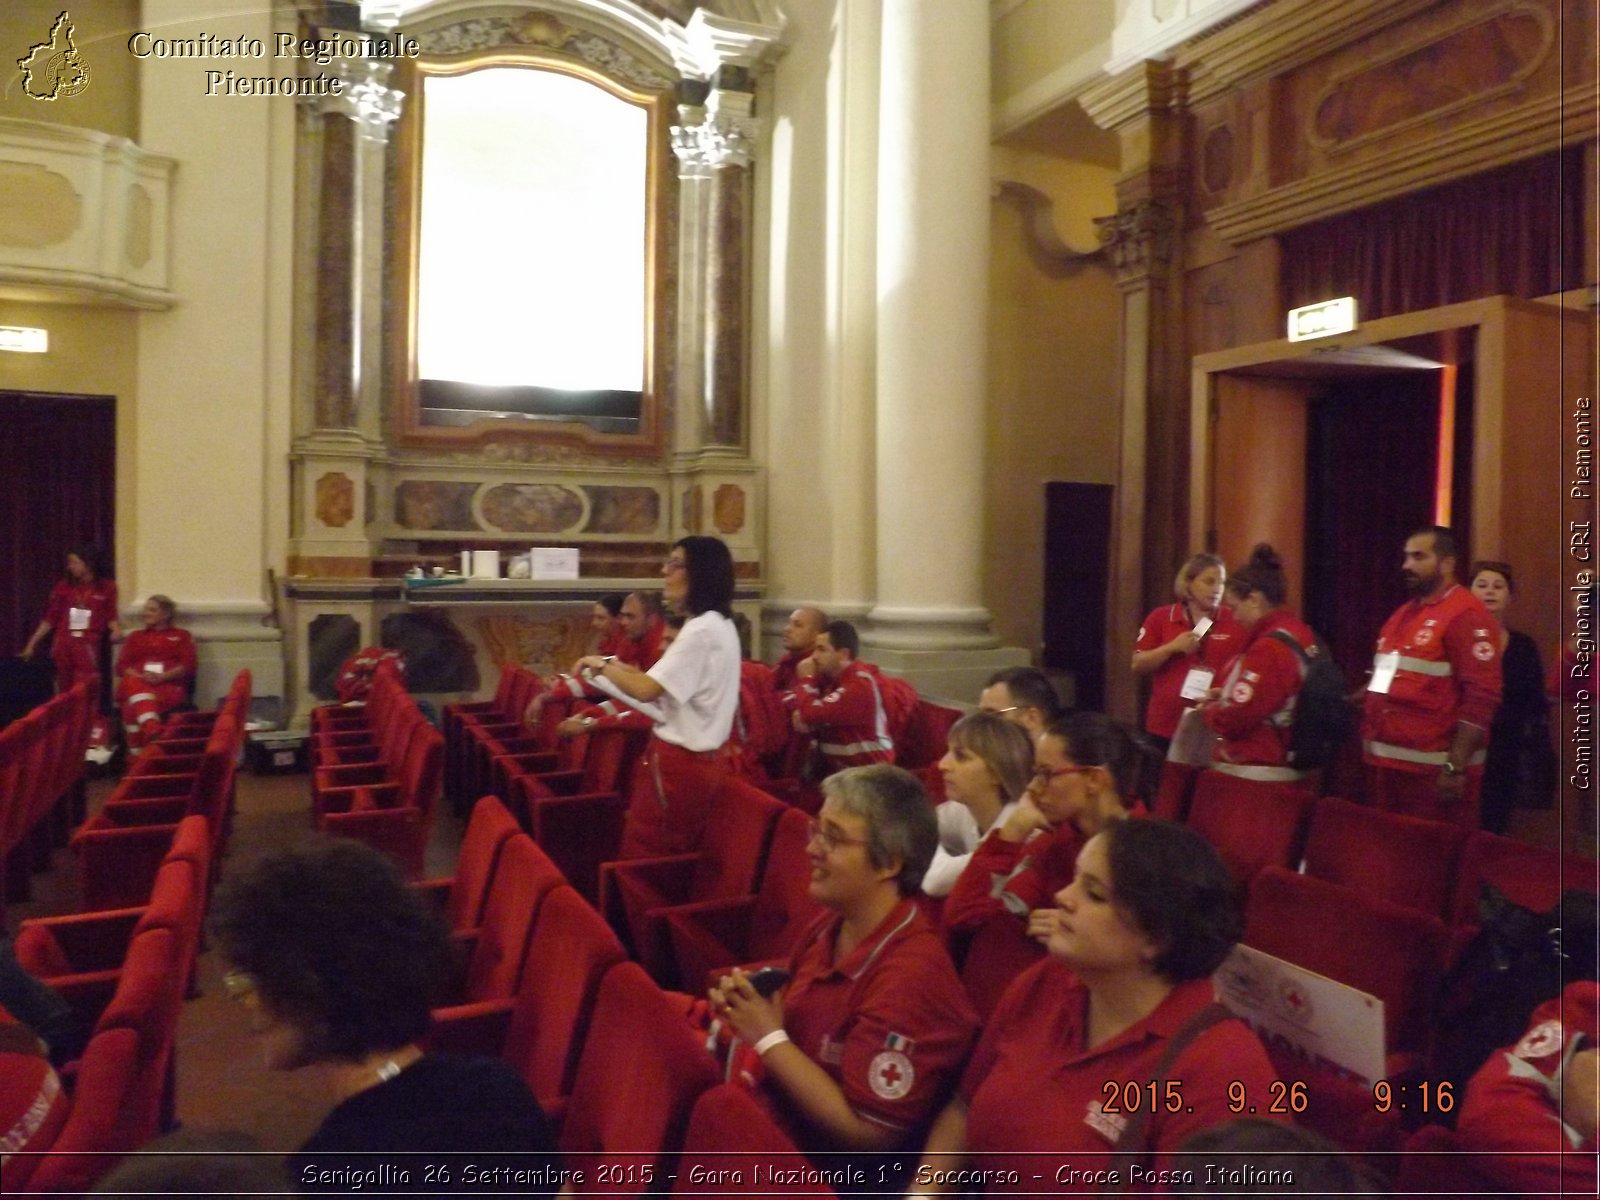 Senigallia 26 Settembre 2015 - Gara Nazionale 1 Soccorso - Croce Rossa Italiana- Comitato Regionale del Piemonte